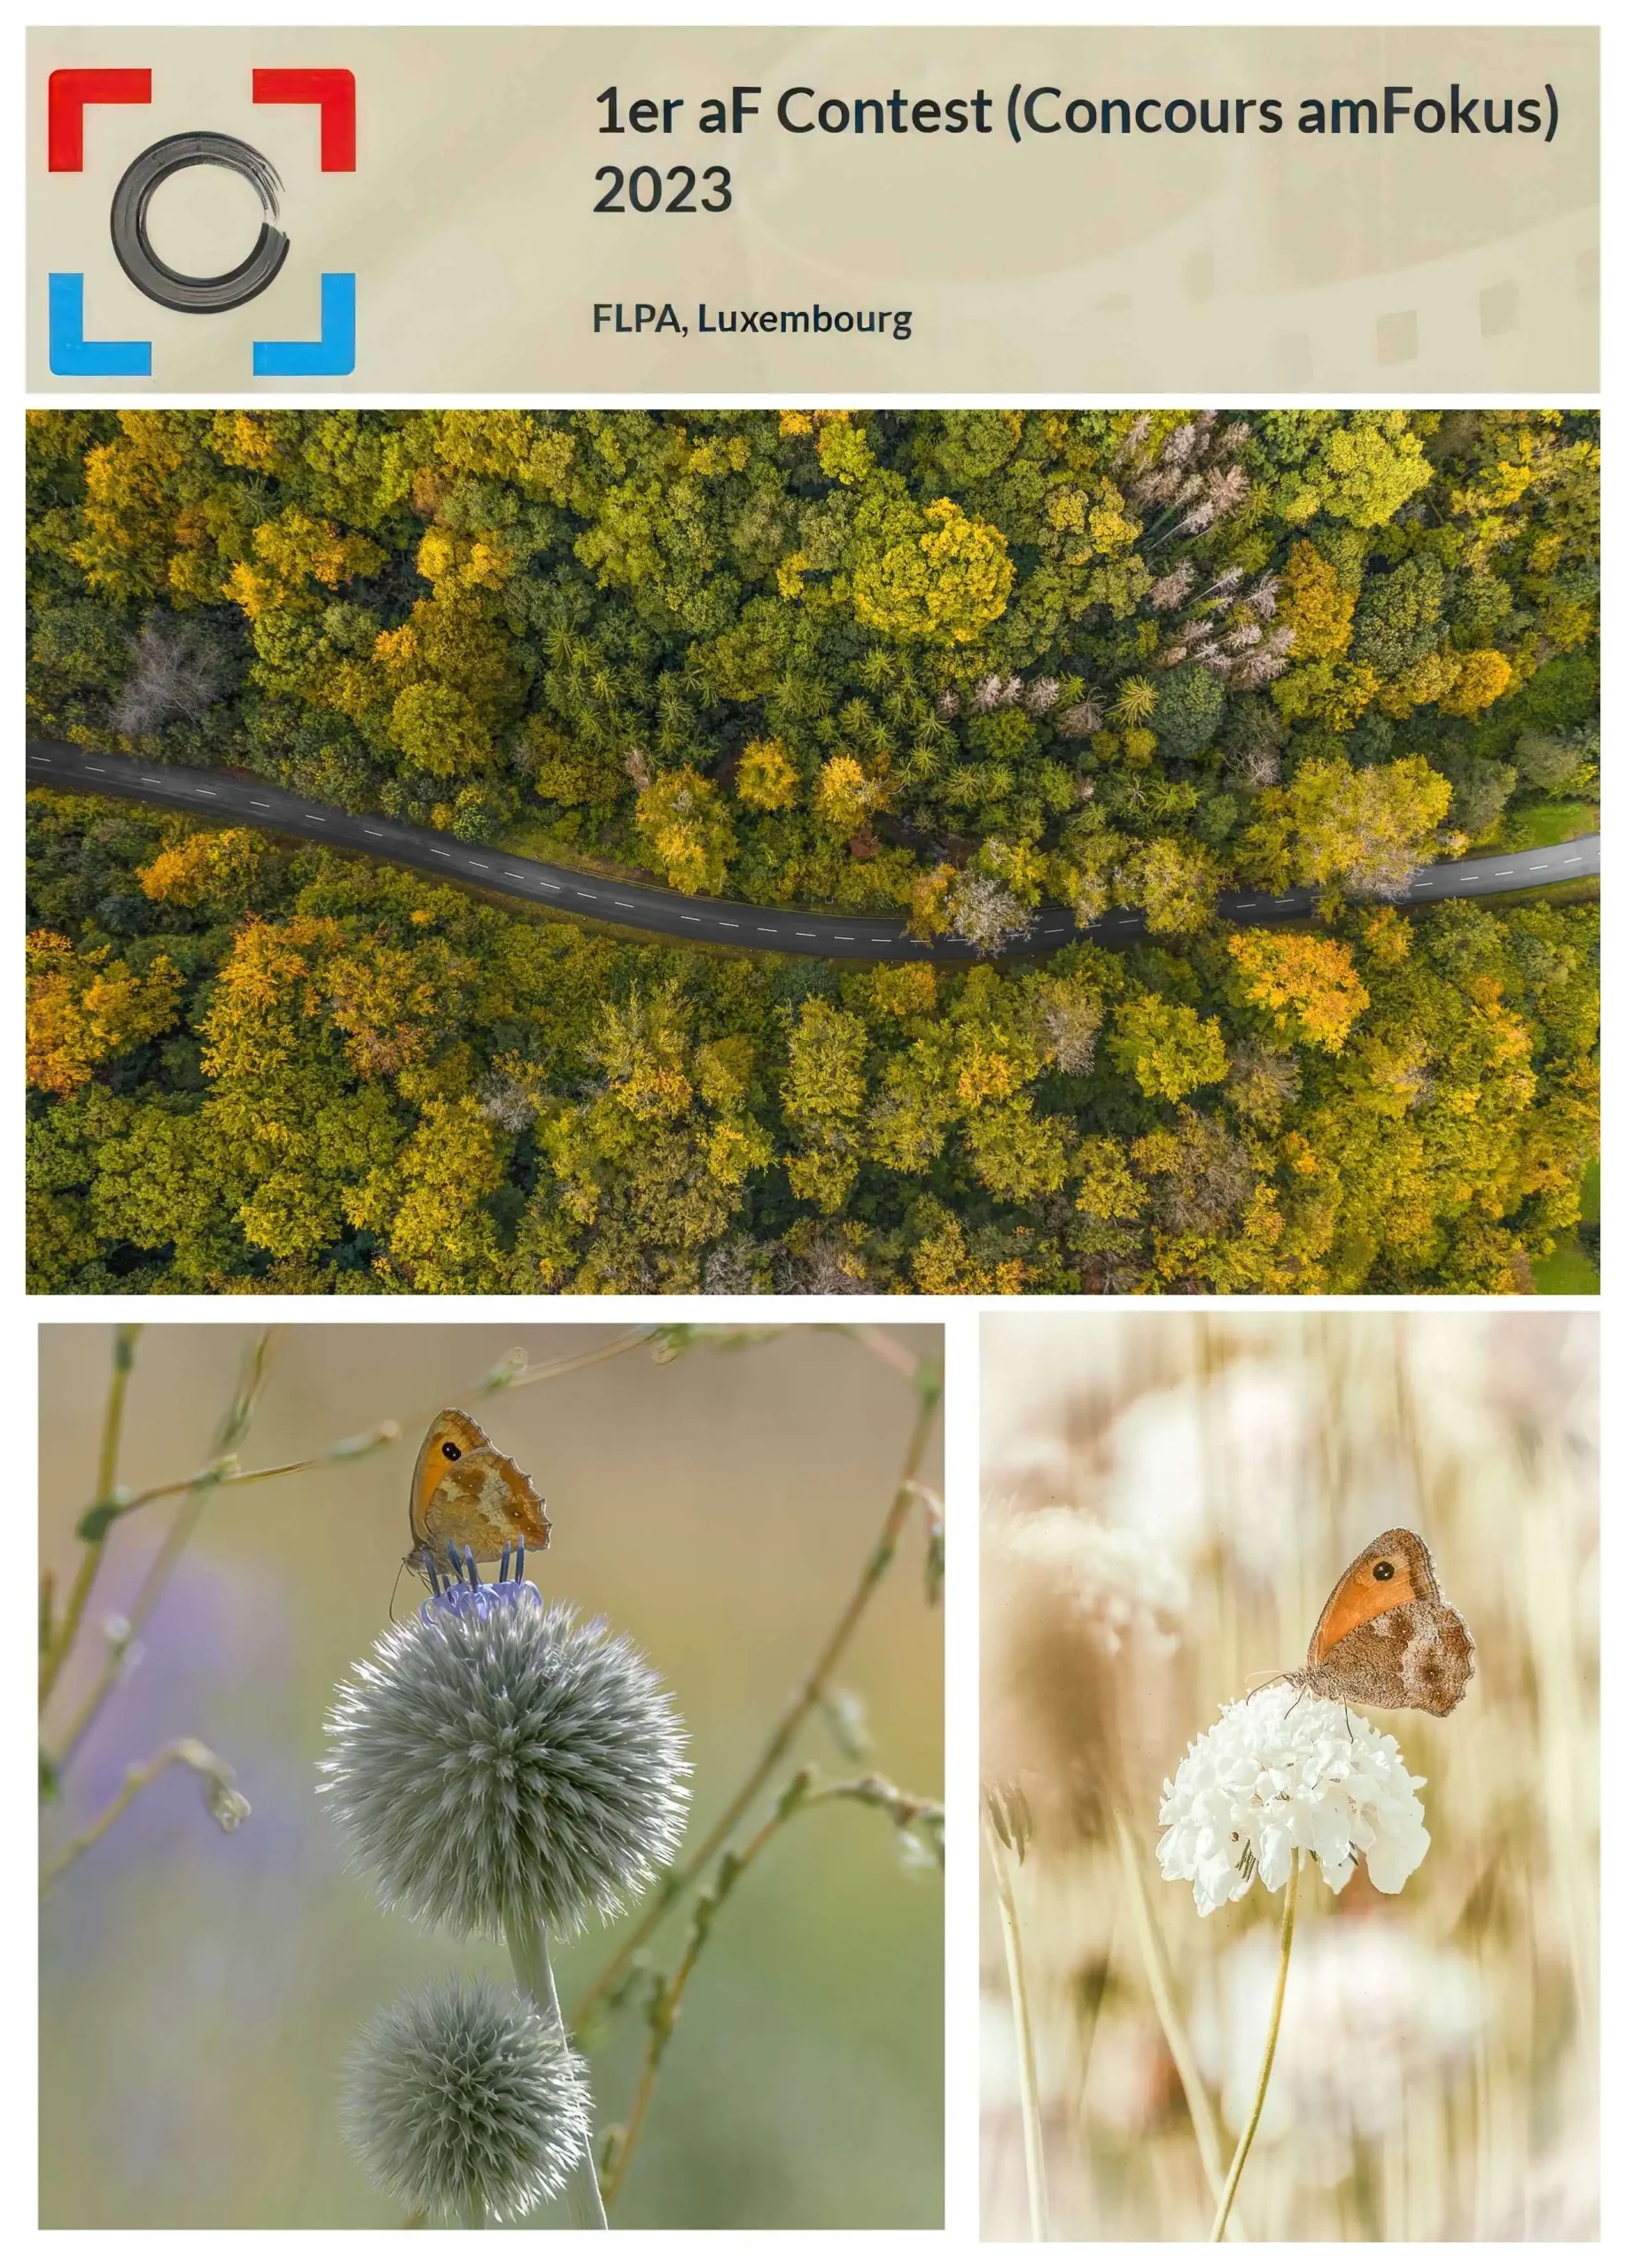 FÉDÉRATION LUXEMBOURGEOISE DE LA PHOTOGRAPHIE ARTISTIQUE; 1er AF Contest (Concours am Fokus); Schmetterlinge; Butterflies; Road trough Autumn; Strasse durch den Wald; Paul Hilbert